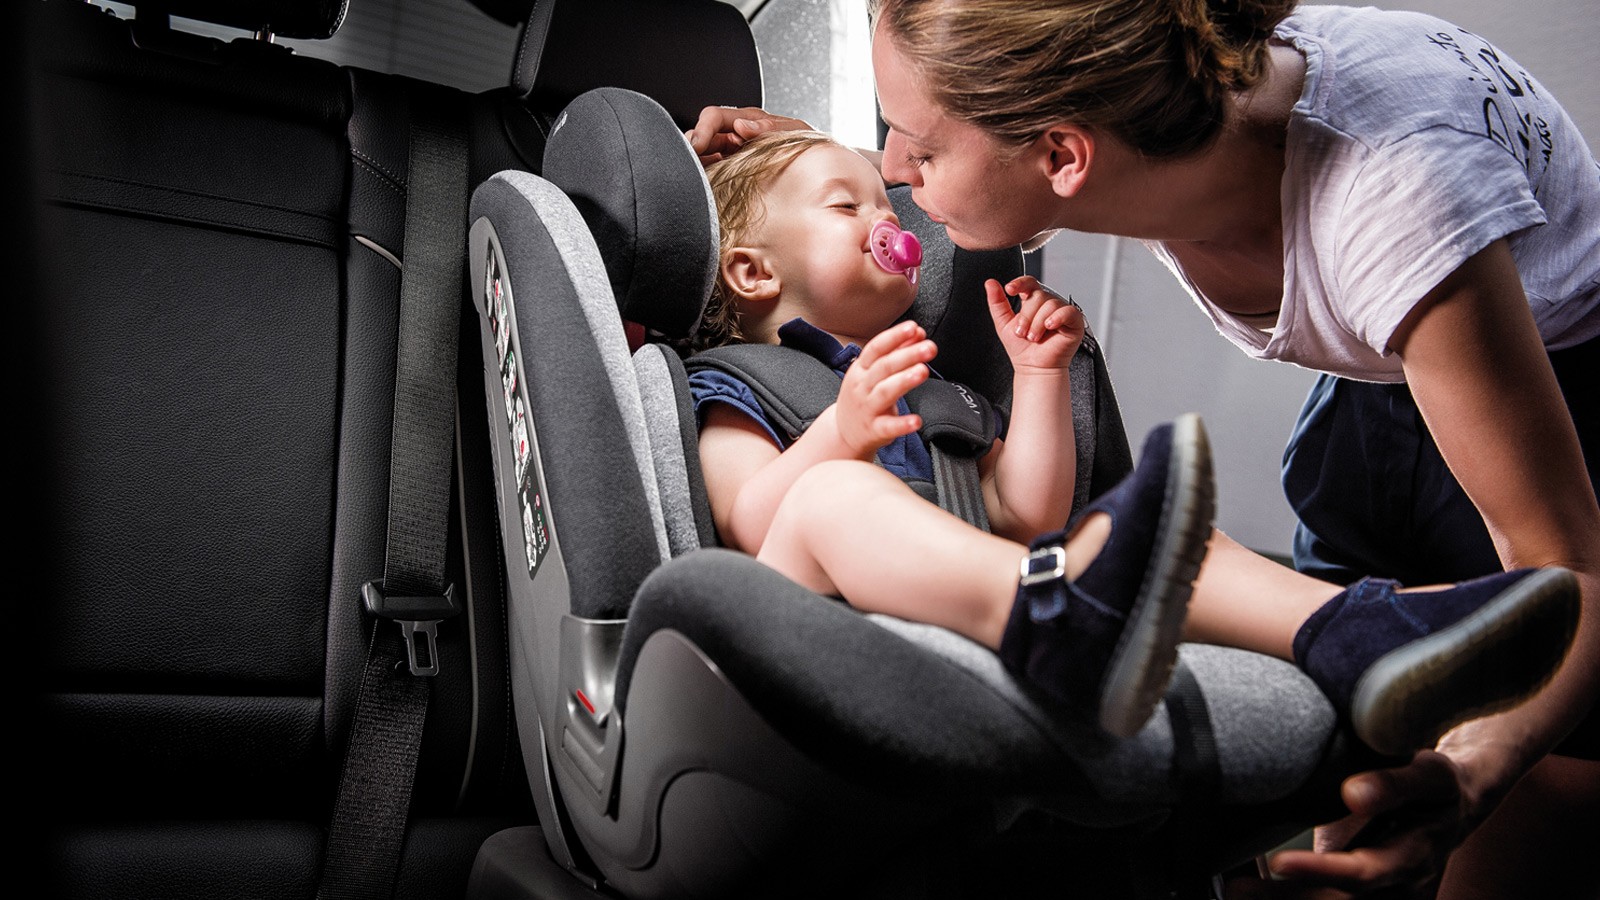 Πώς θα επιλέξω το σωστό κάθισμα αυτοκινήτου για το παιδί μου; Η ασφάλεια των παιδιών στο αυτοκίνητο είναι προτεραιότητα. Γι' αυτό, πριν ετοιμάσουμε βαλίτσες για τις γιορτινές εξορμήσεις μας, επιλέγουμε το κατάλληλο παιδικό κάθισμα αυτοκινήτου. Οι προτάσεις της Inglesina πληρούν τις πιο αυστηρές προδιαγραφές.